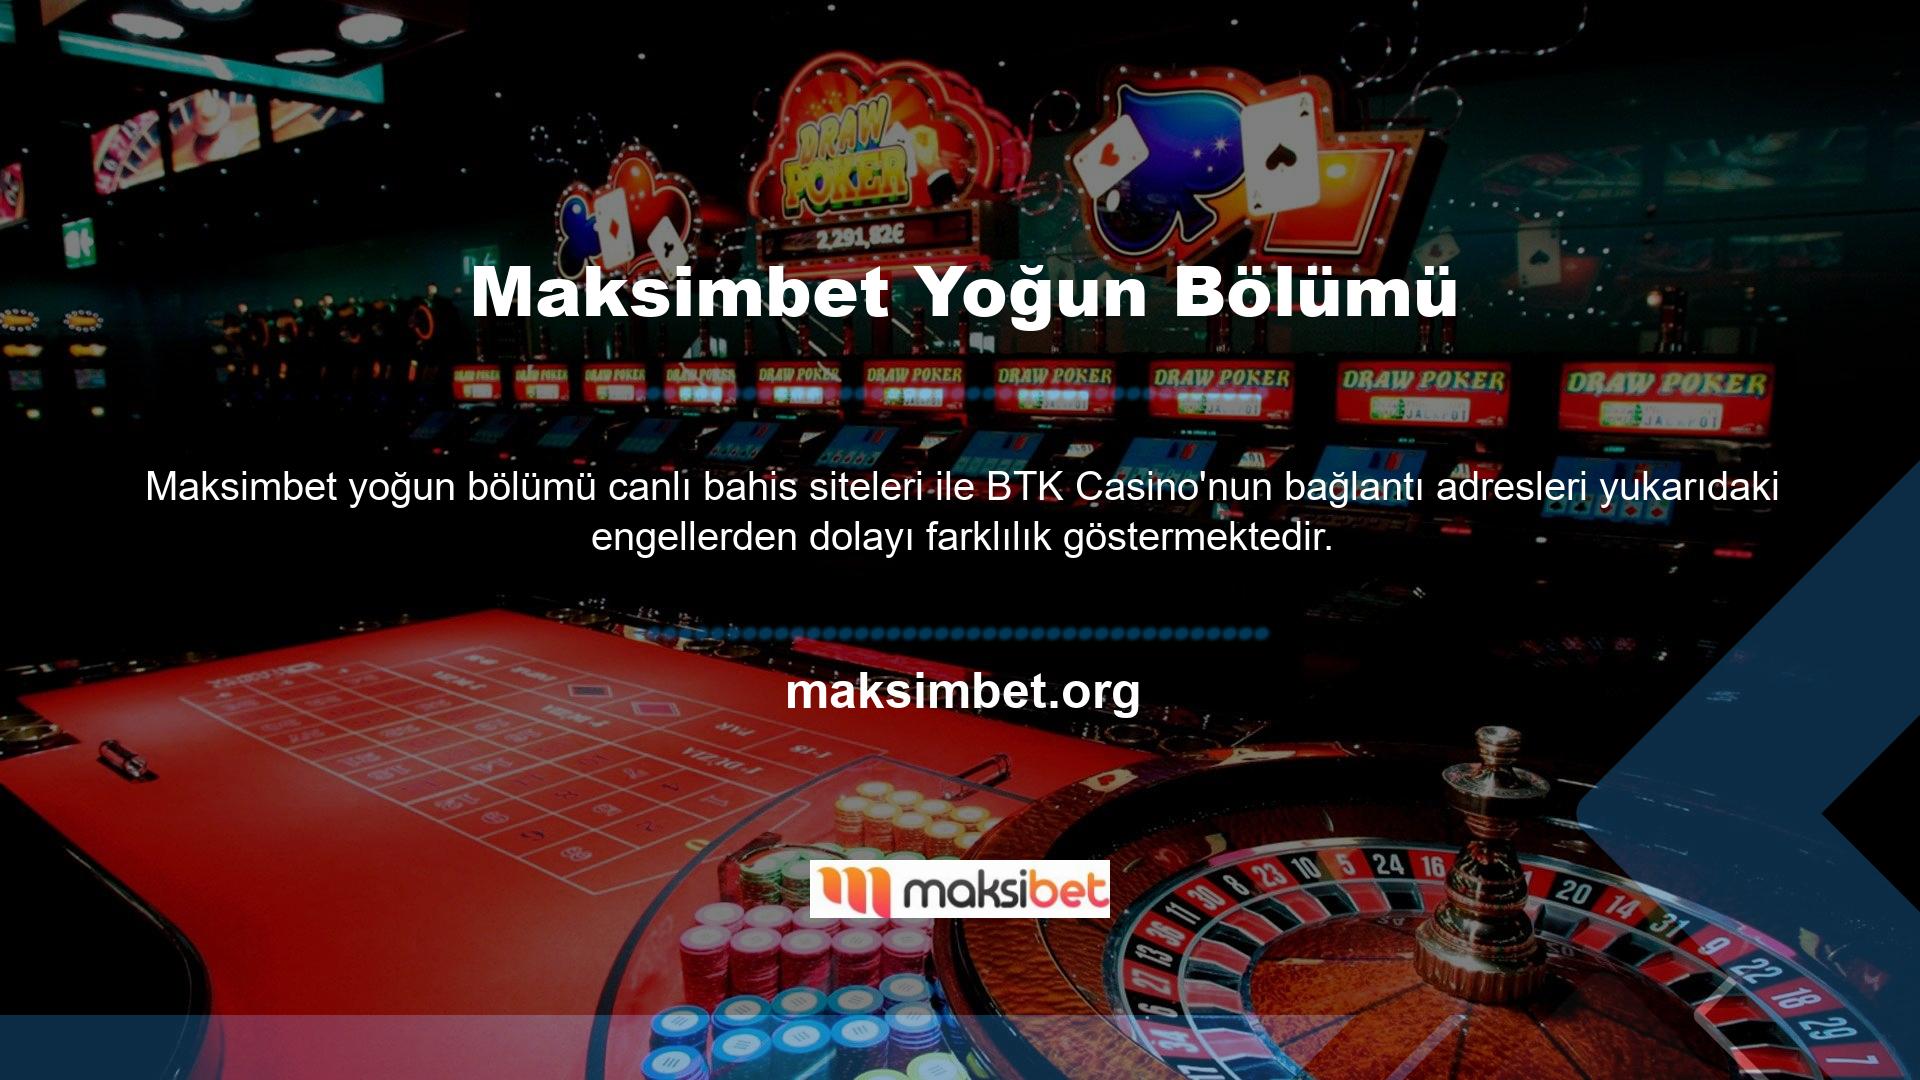 Ülkemizde birçok casino sitesi bulunmaktadır